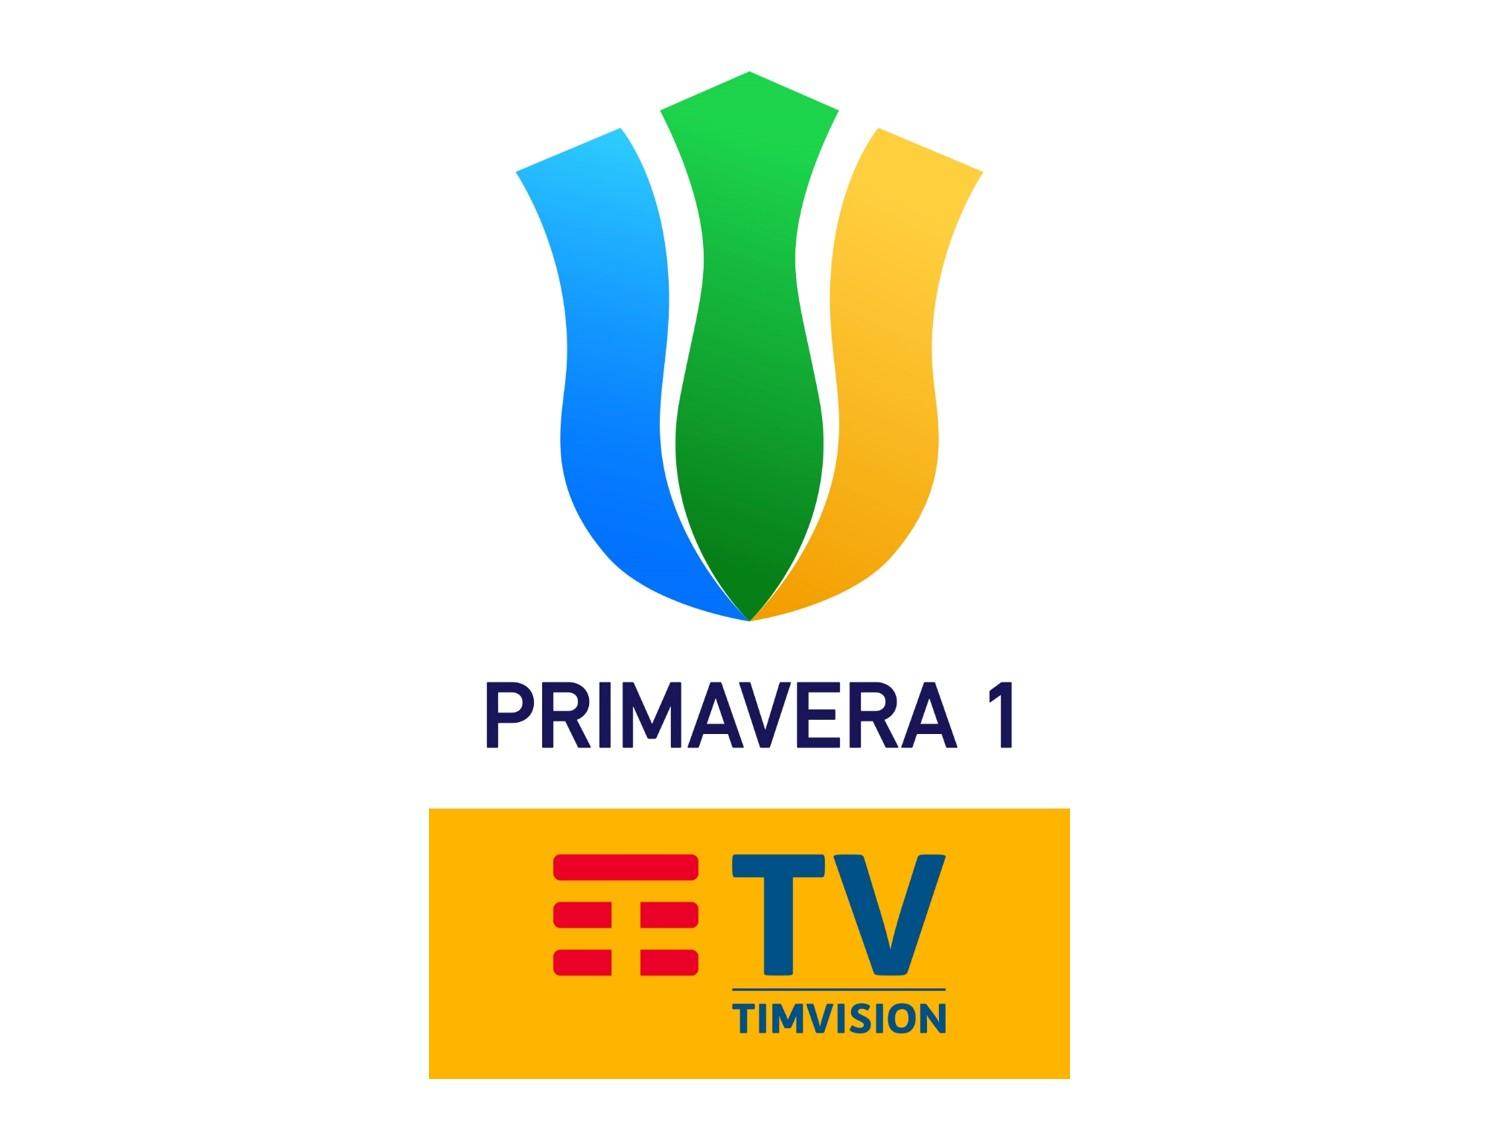 Sportitalia Campionato Primavera 1 TimVision - Programma 2a Giornata e Telecronisti